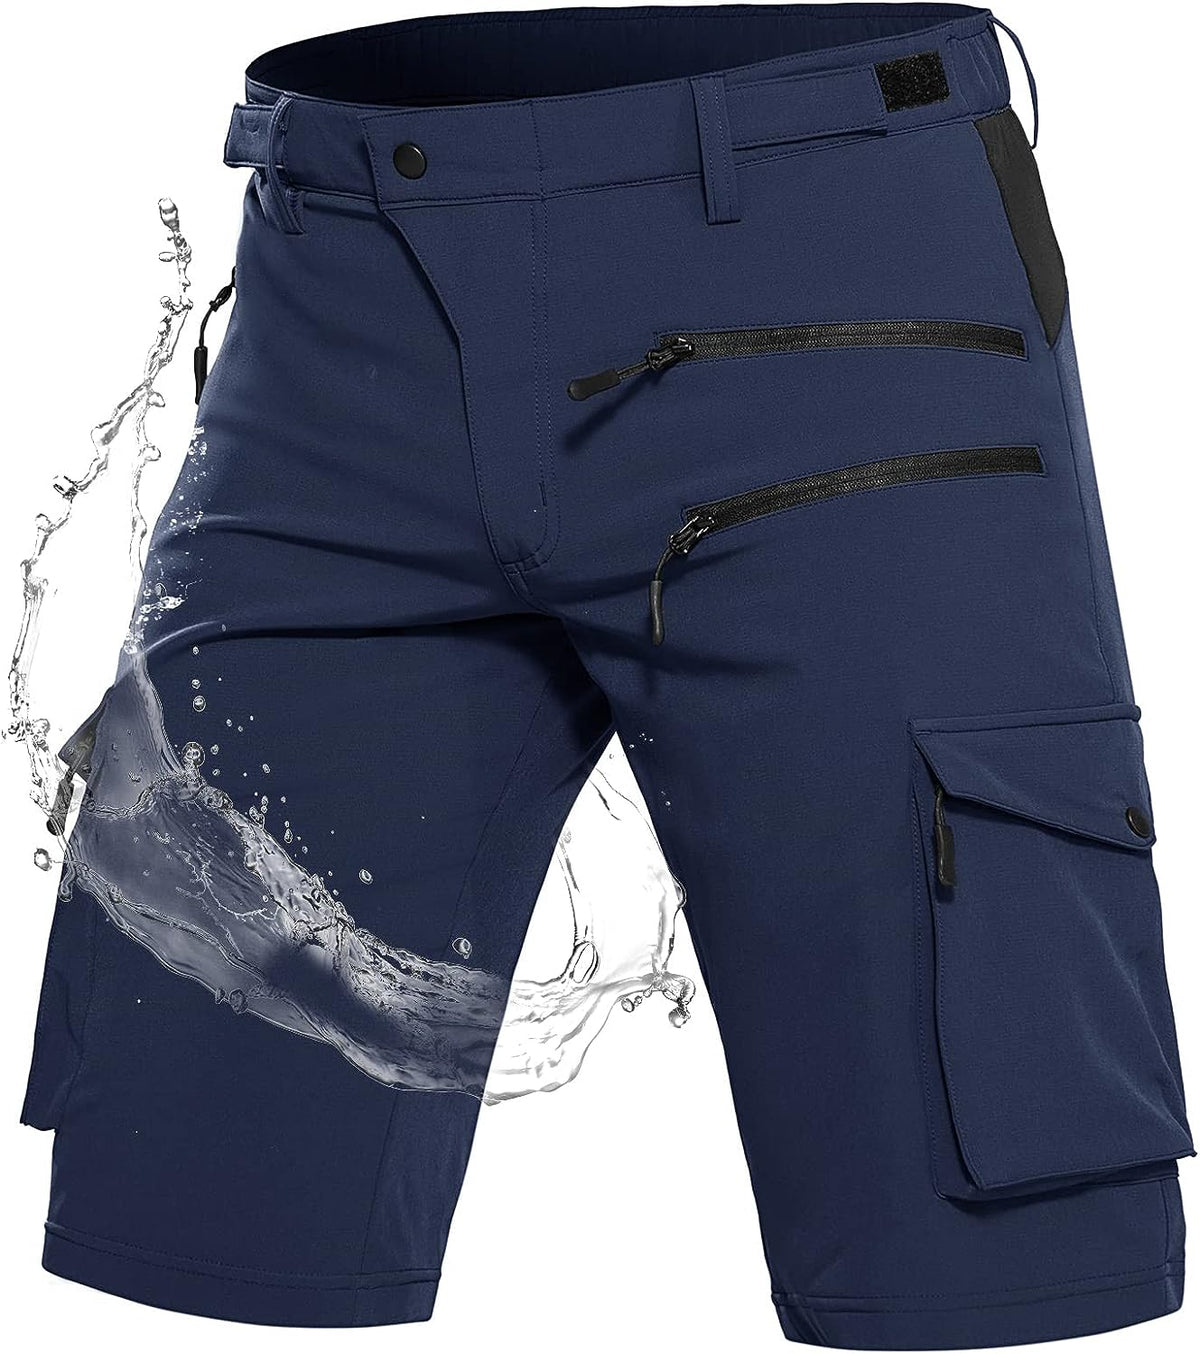 Men's Hiking Shorts Tactical Shorts #Color_dark navy